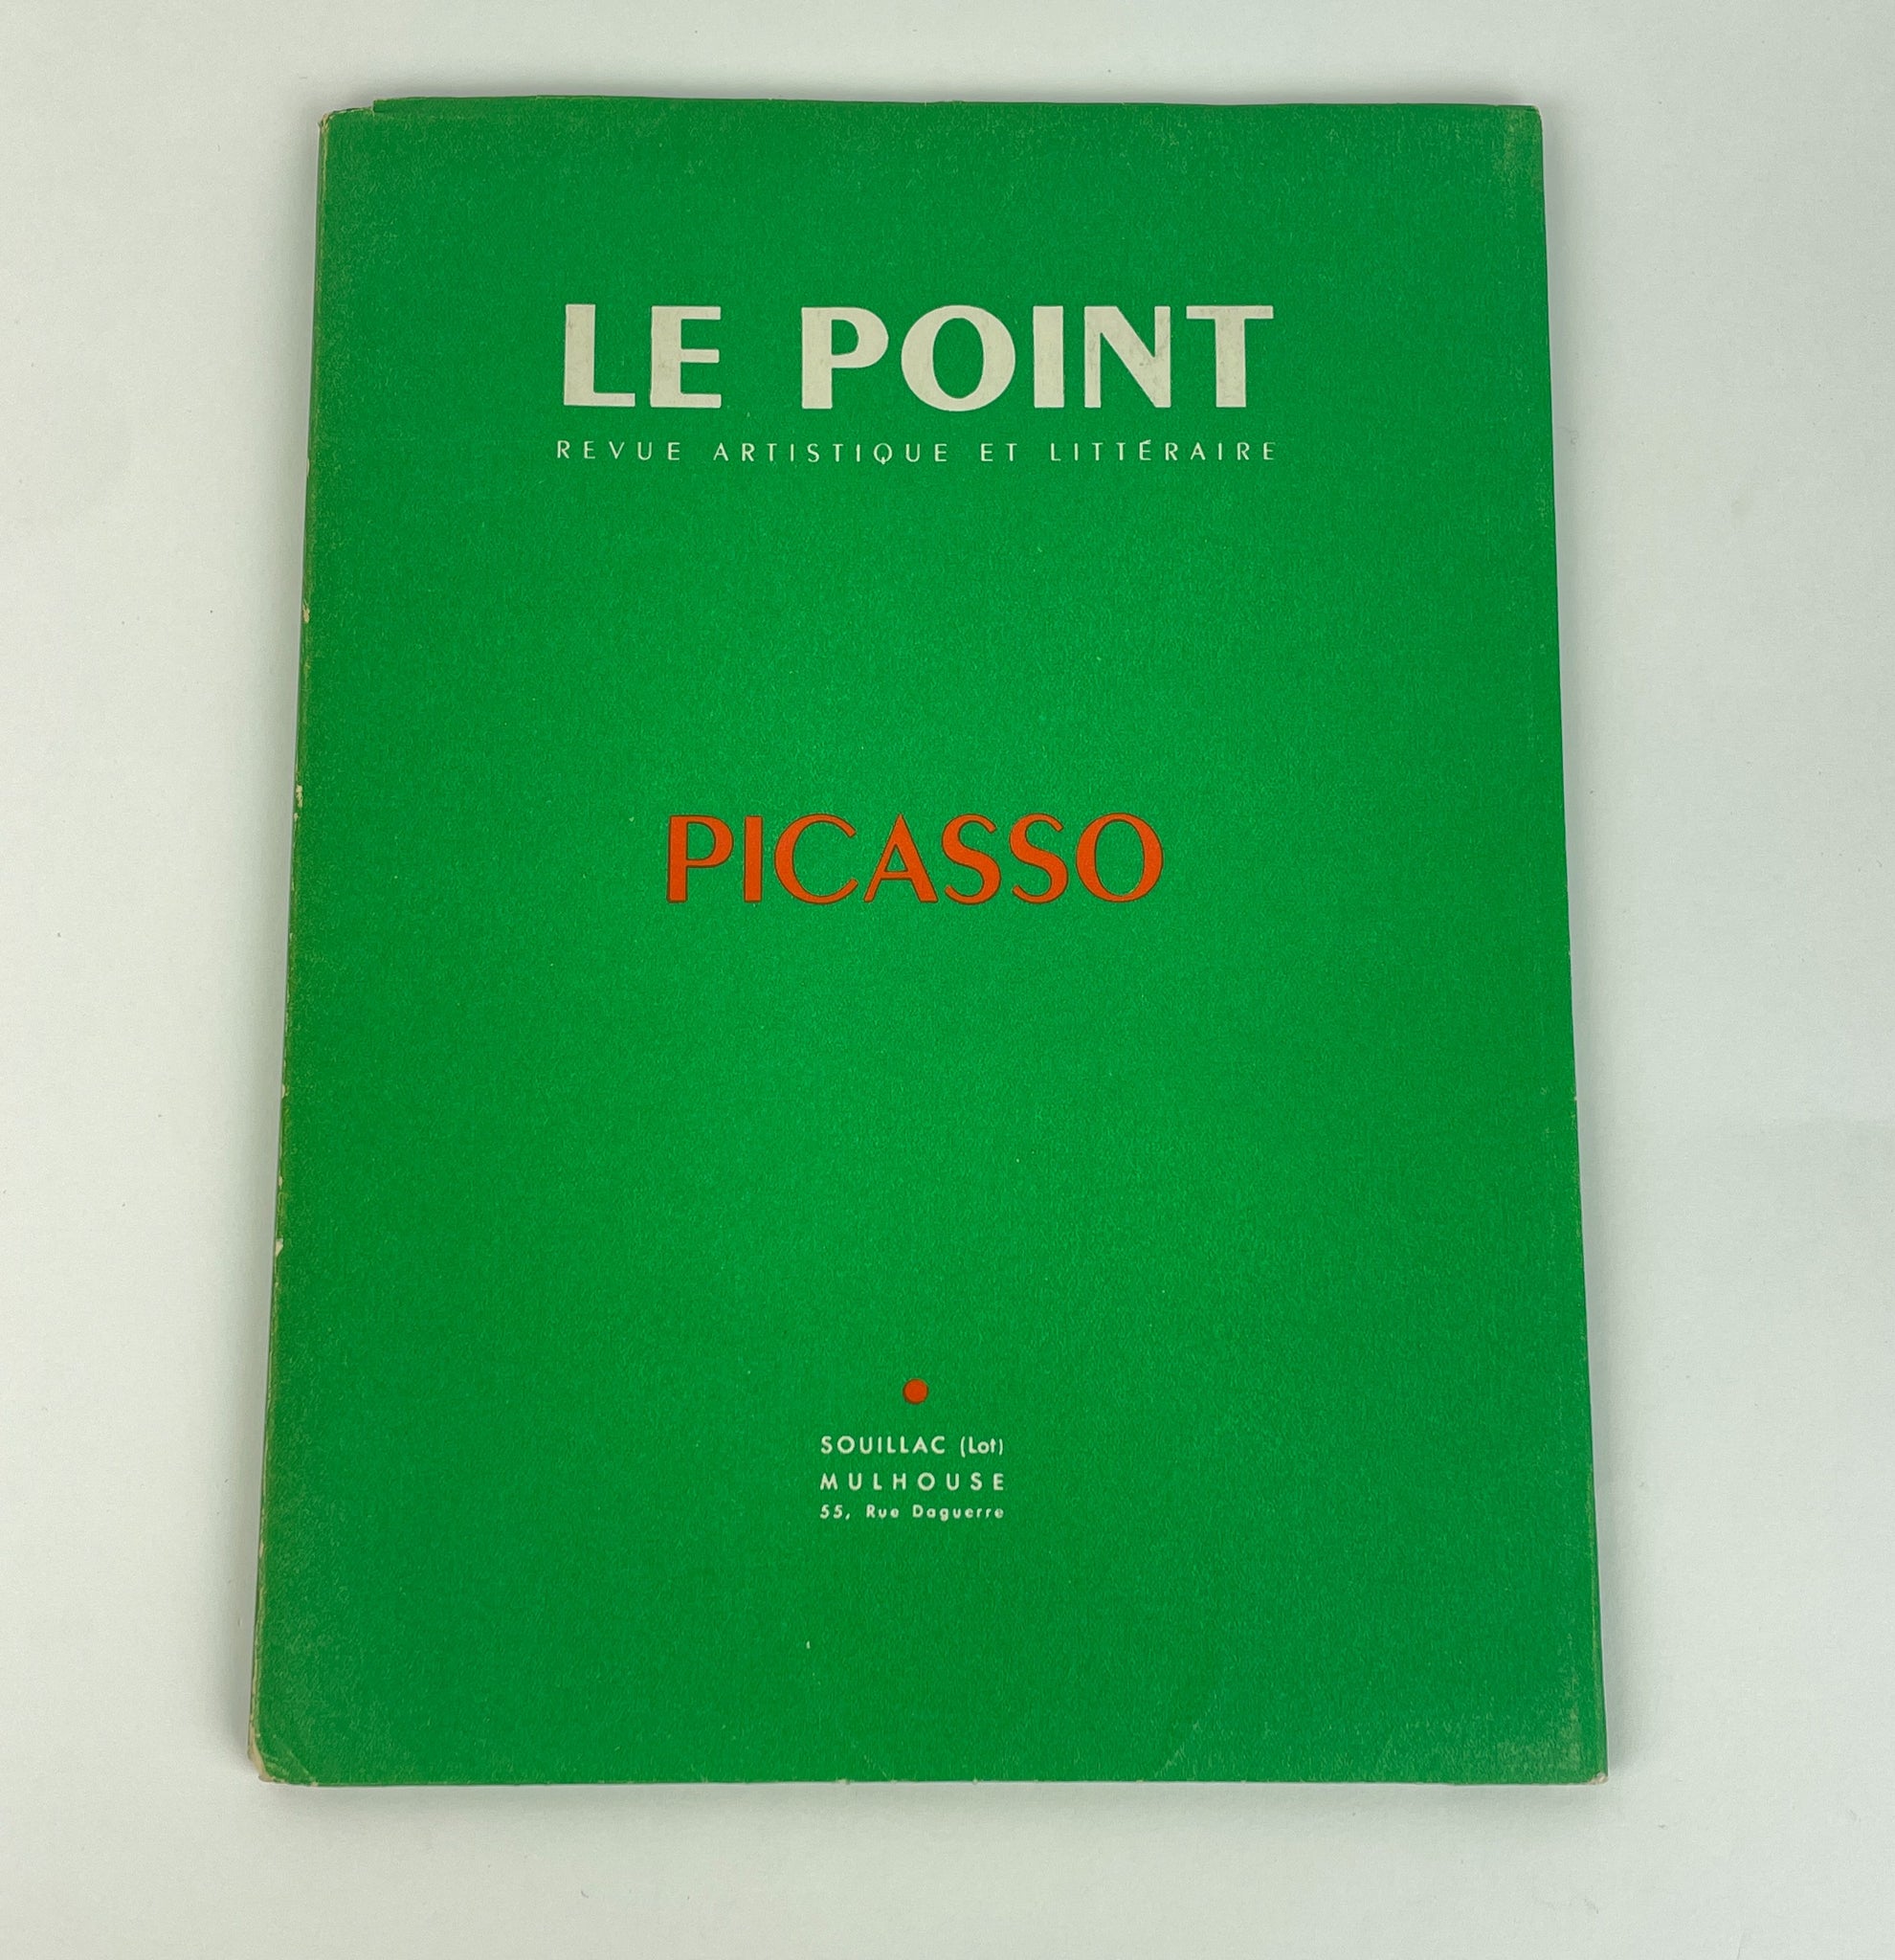 Picasso, Pablo. (1881–1973) [Doisneau, Robert. (1912–1994)] "Le Point - REVUE ARTISTIQUE ET LITTÉRAIRE. XLII. PICASSO" - SIGNED